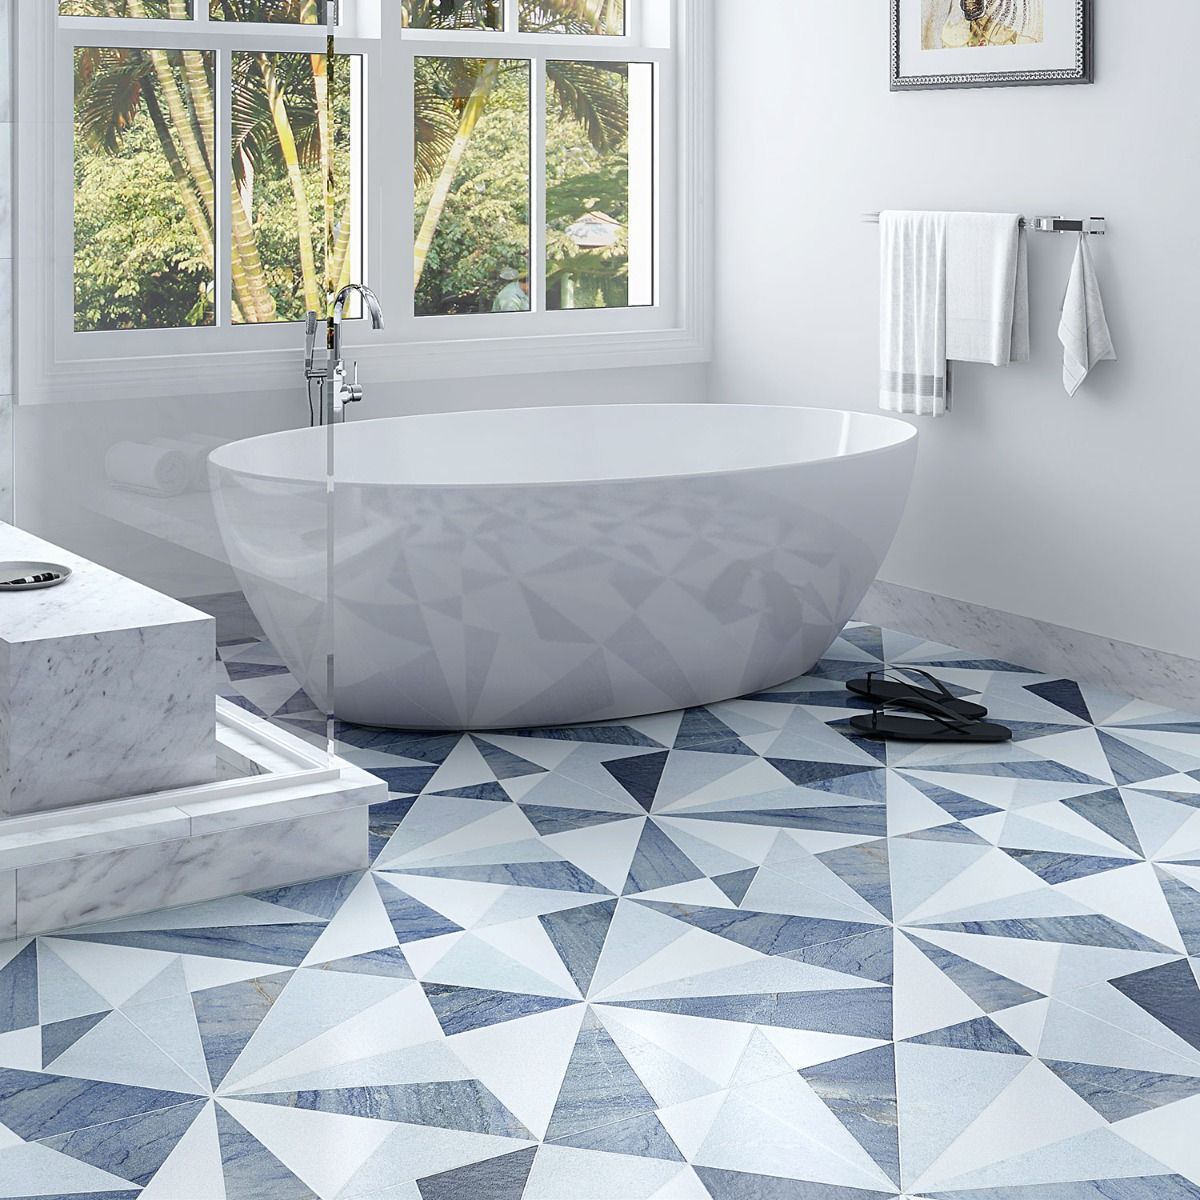 Jagger Azur Polished Marble Mosaic Tile - Shower Floor Tile Ideas